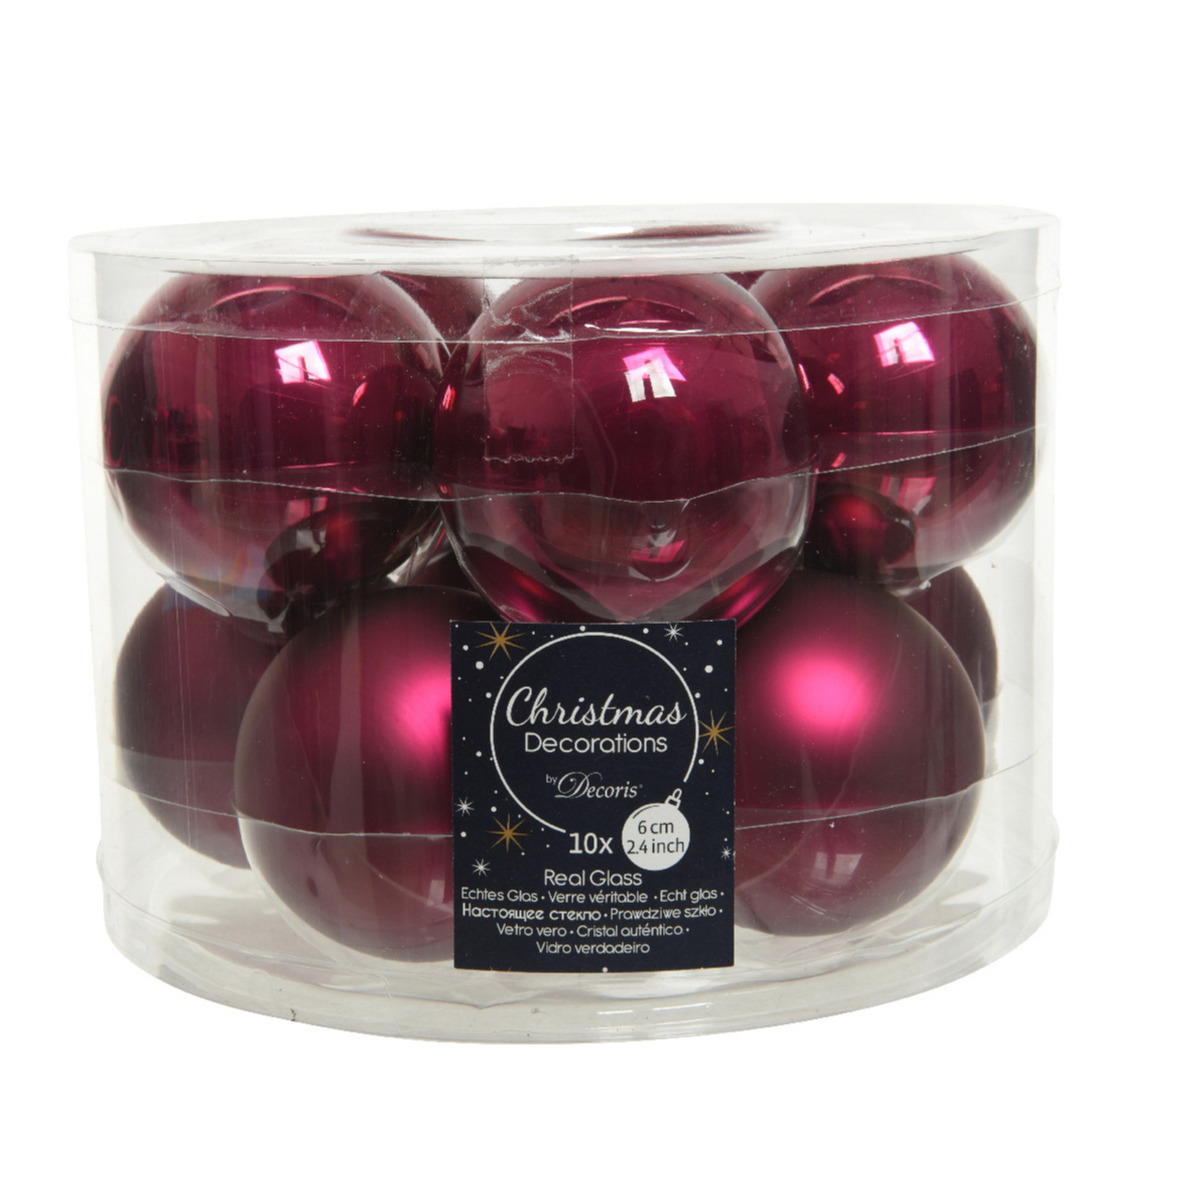 10x stuks glazen kerstballen framboos roze (magnolia) 6 cm mat-glans